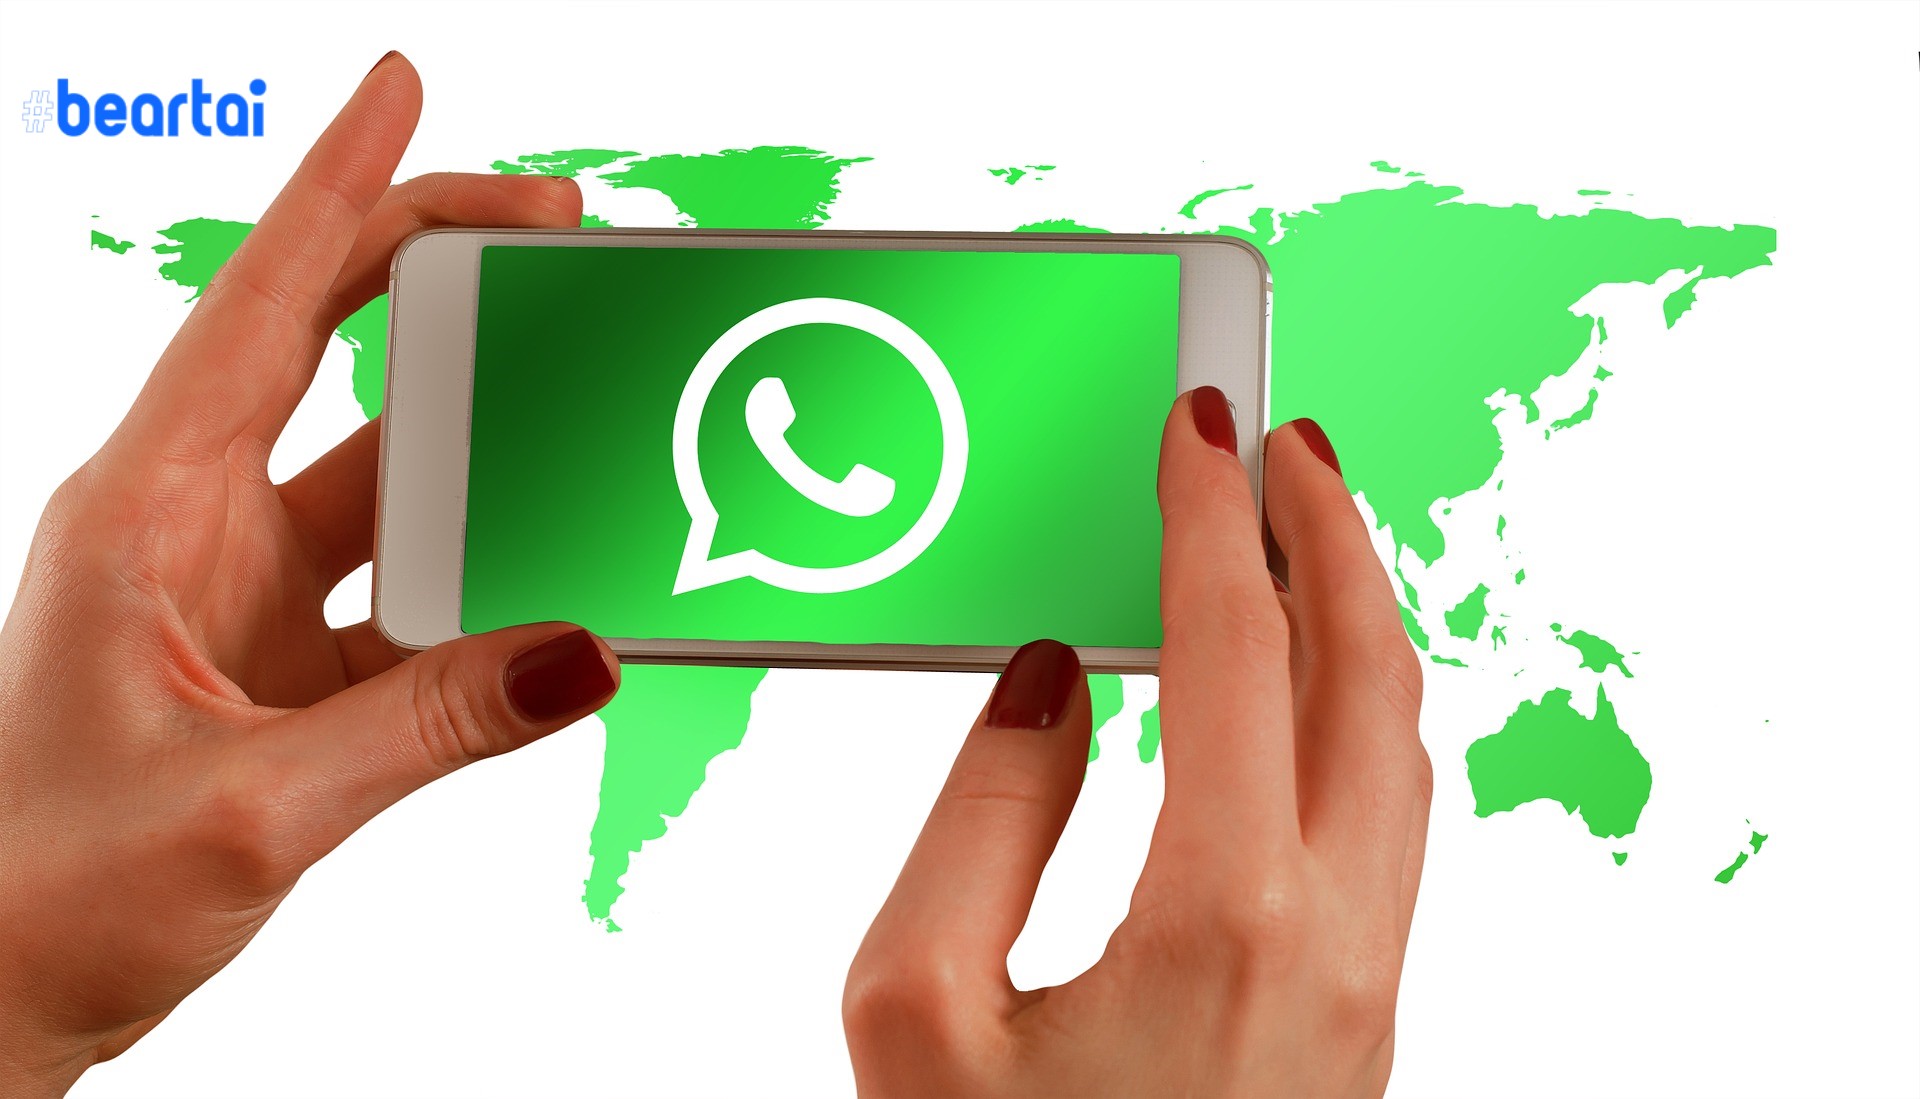 ผู้ใช้ WhatsApp ในแคชเมียร์กำลังบัญชีหมดอายุหลังถูกตัดอินเทอร์เน็ตนาน 4 เดือน